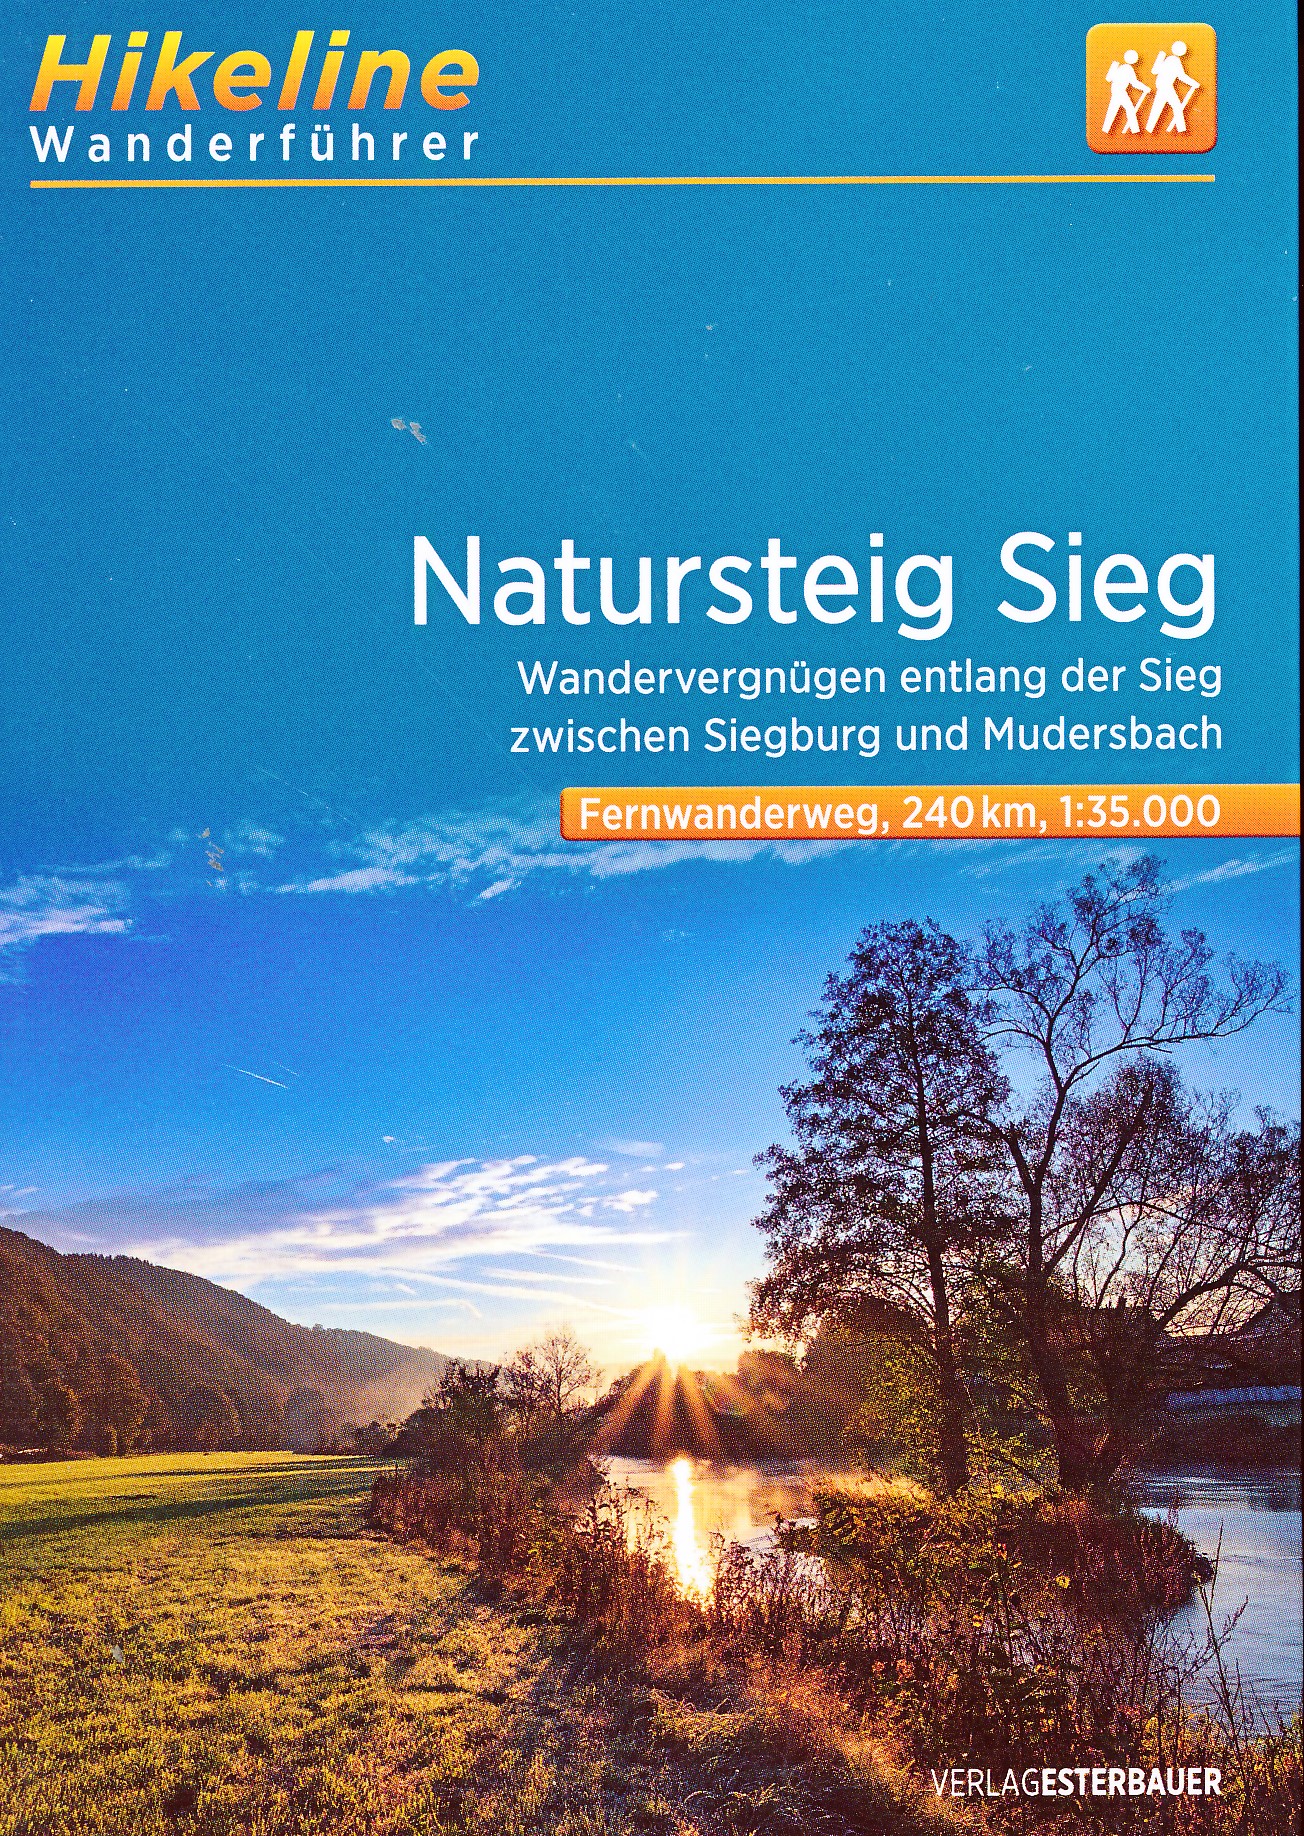 Online bestellen: Wandelgids Hikeline Fernwanderweg Natursteig Sieg | Esterbauer